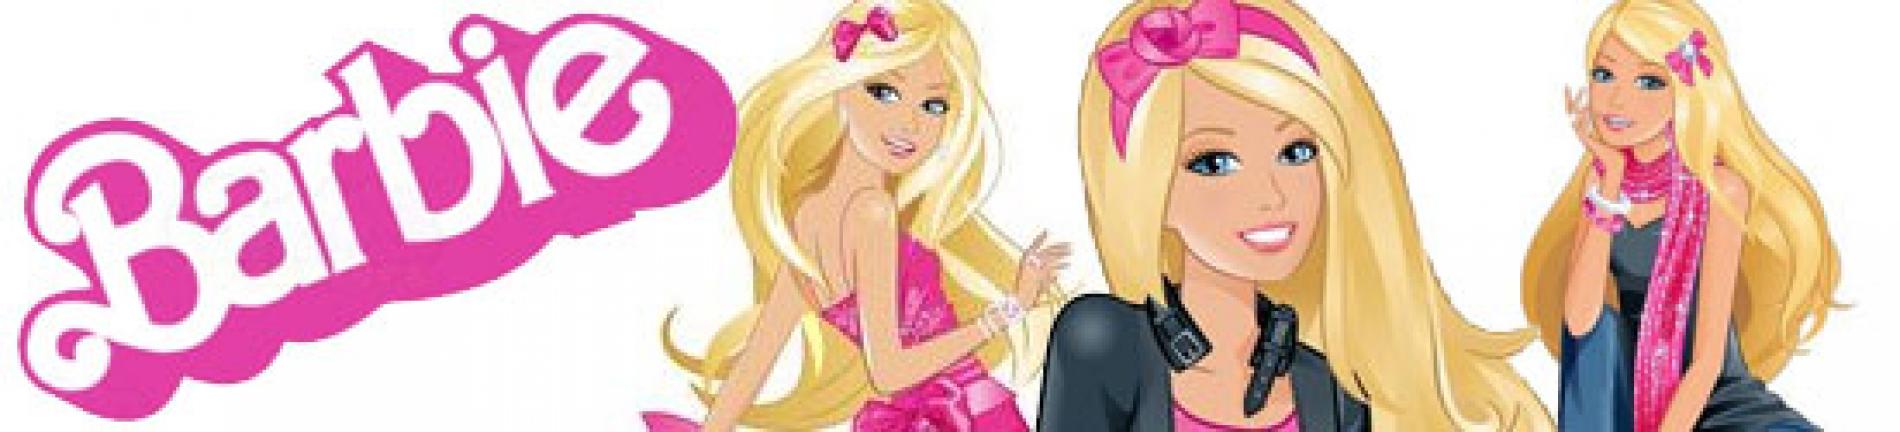 ภาพระบายสี Barbie ตุ๊กตาบาร์บี้